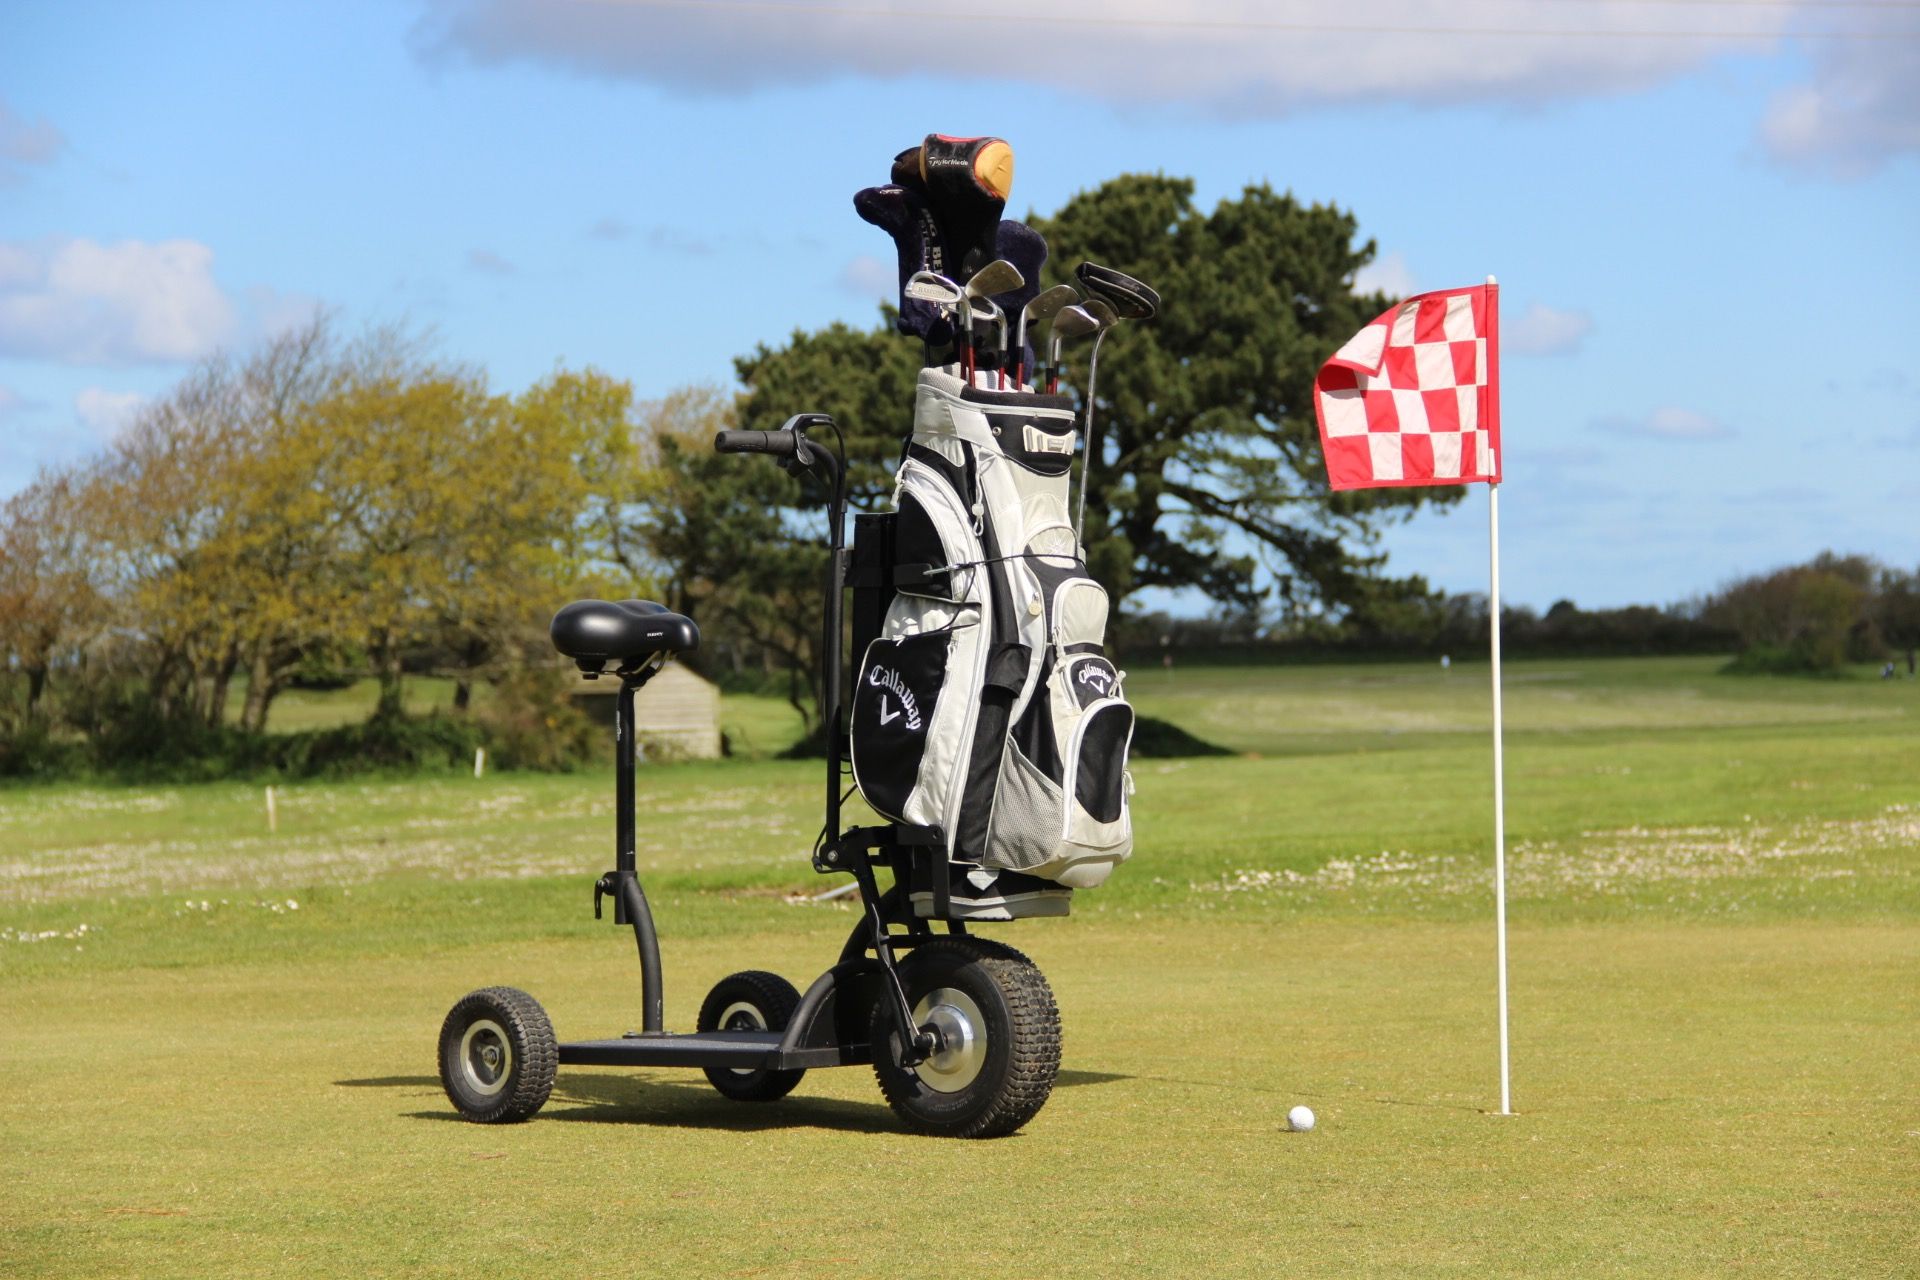 Trottinette électrique pour parcours de golf. Confortable, stable, Made in France. Autonomie élevée, design breton